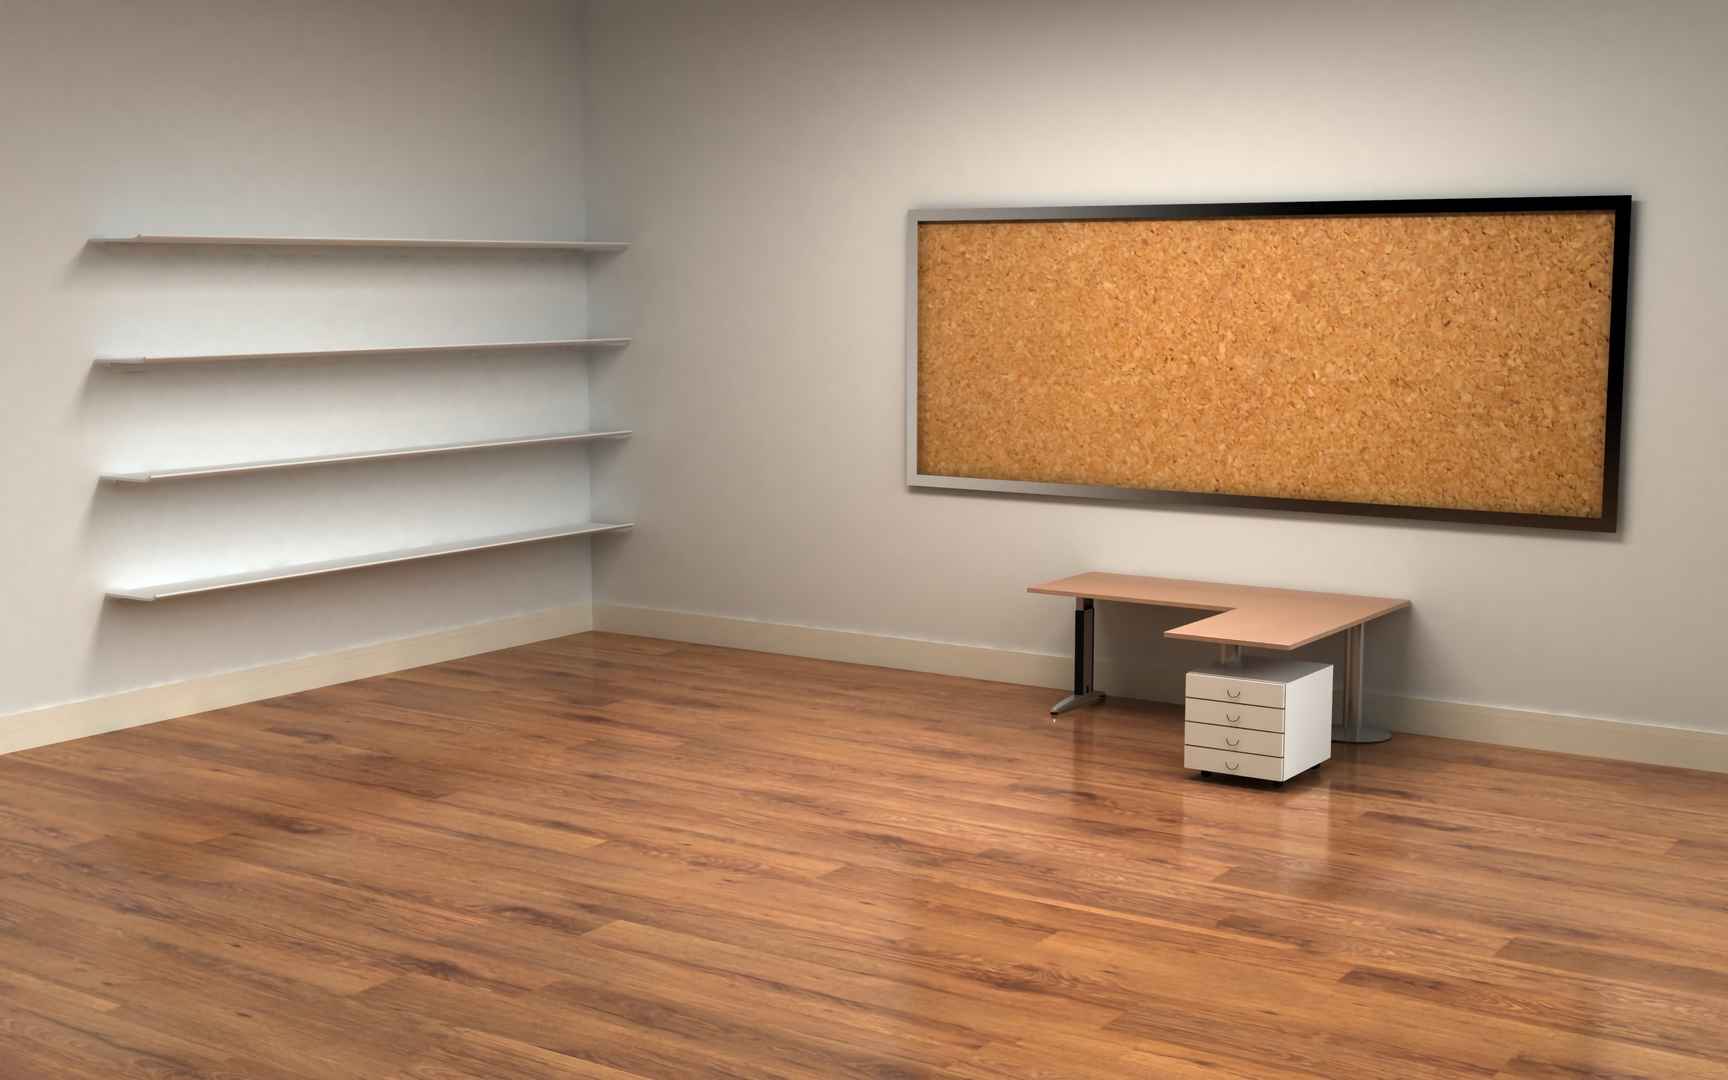 办公室 书架 桌子 木地板 4k 3d壁纸-